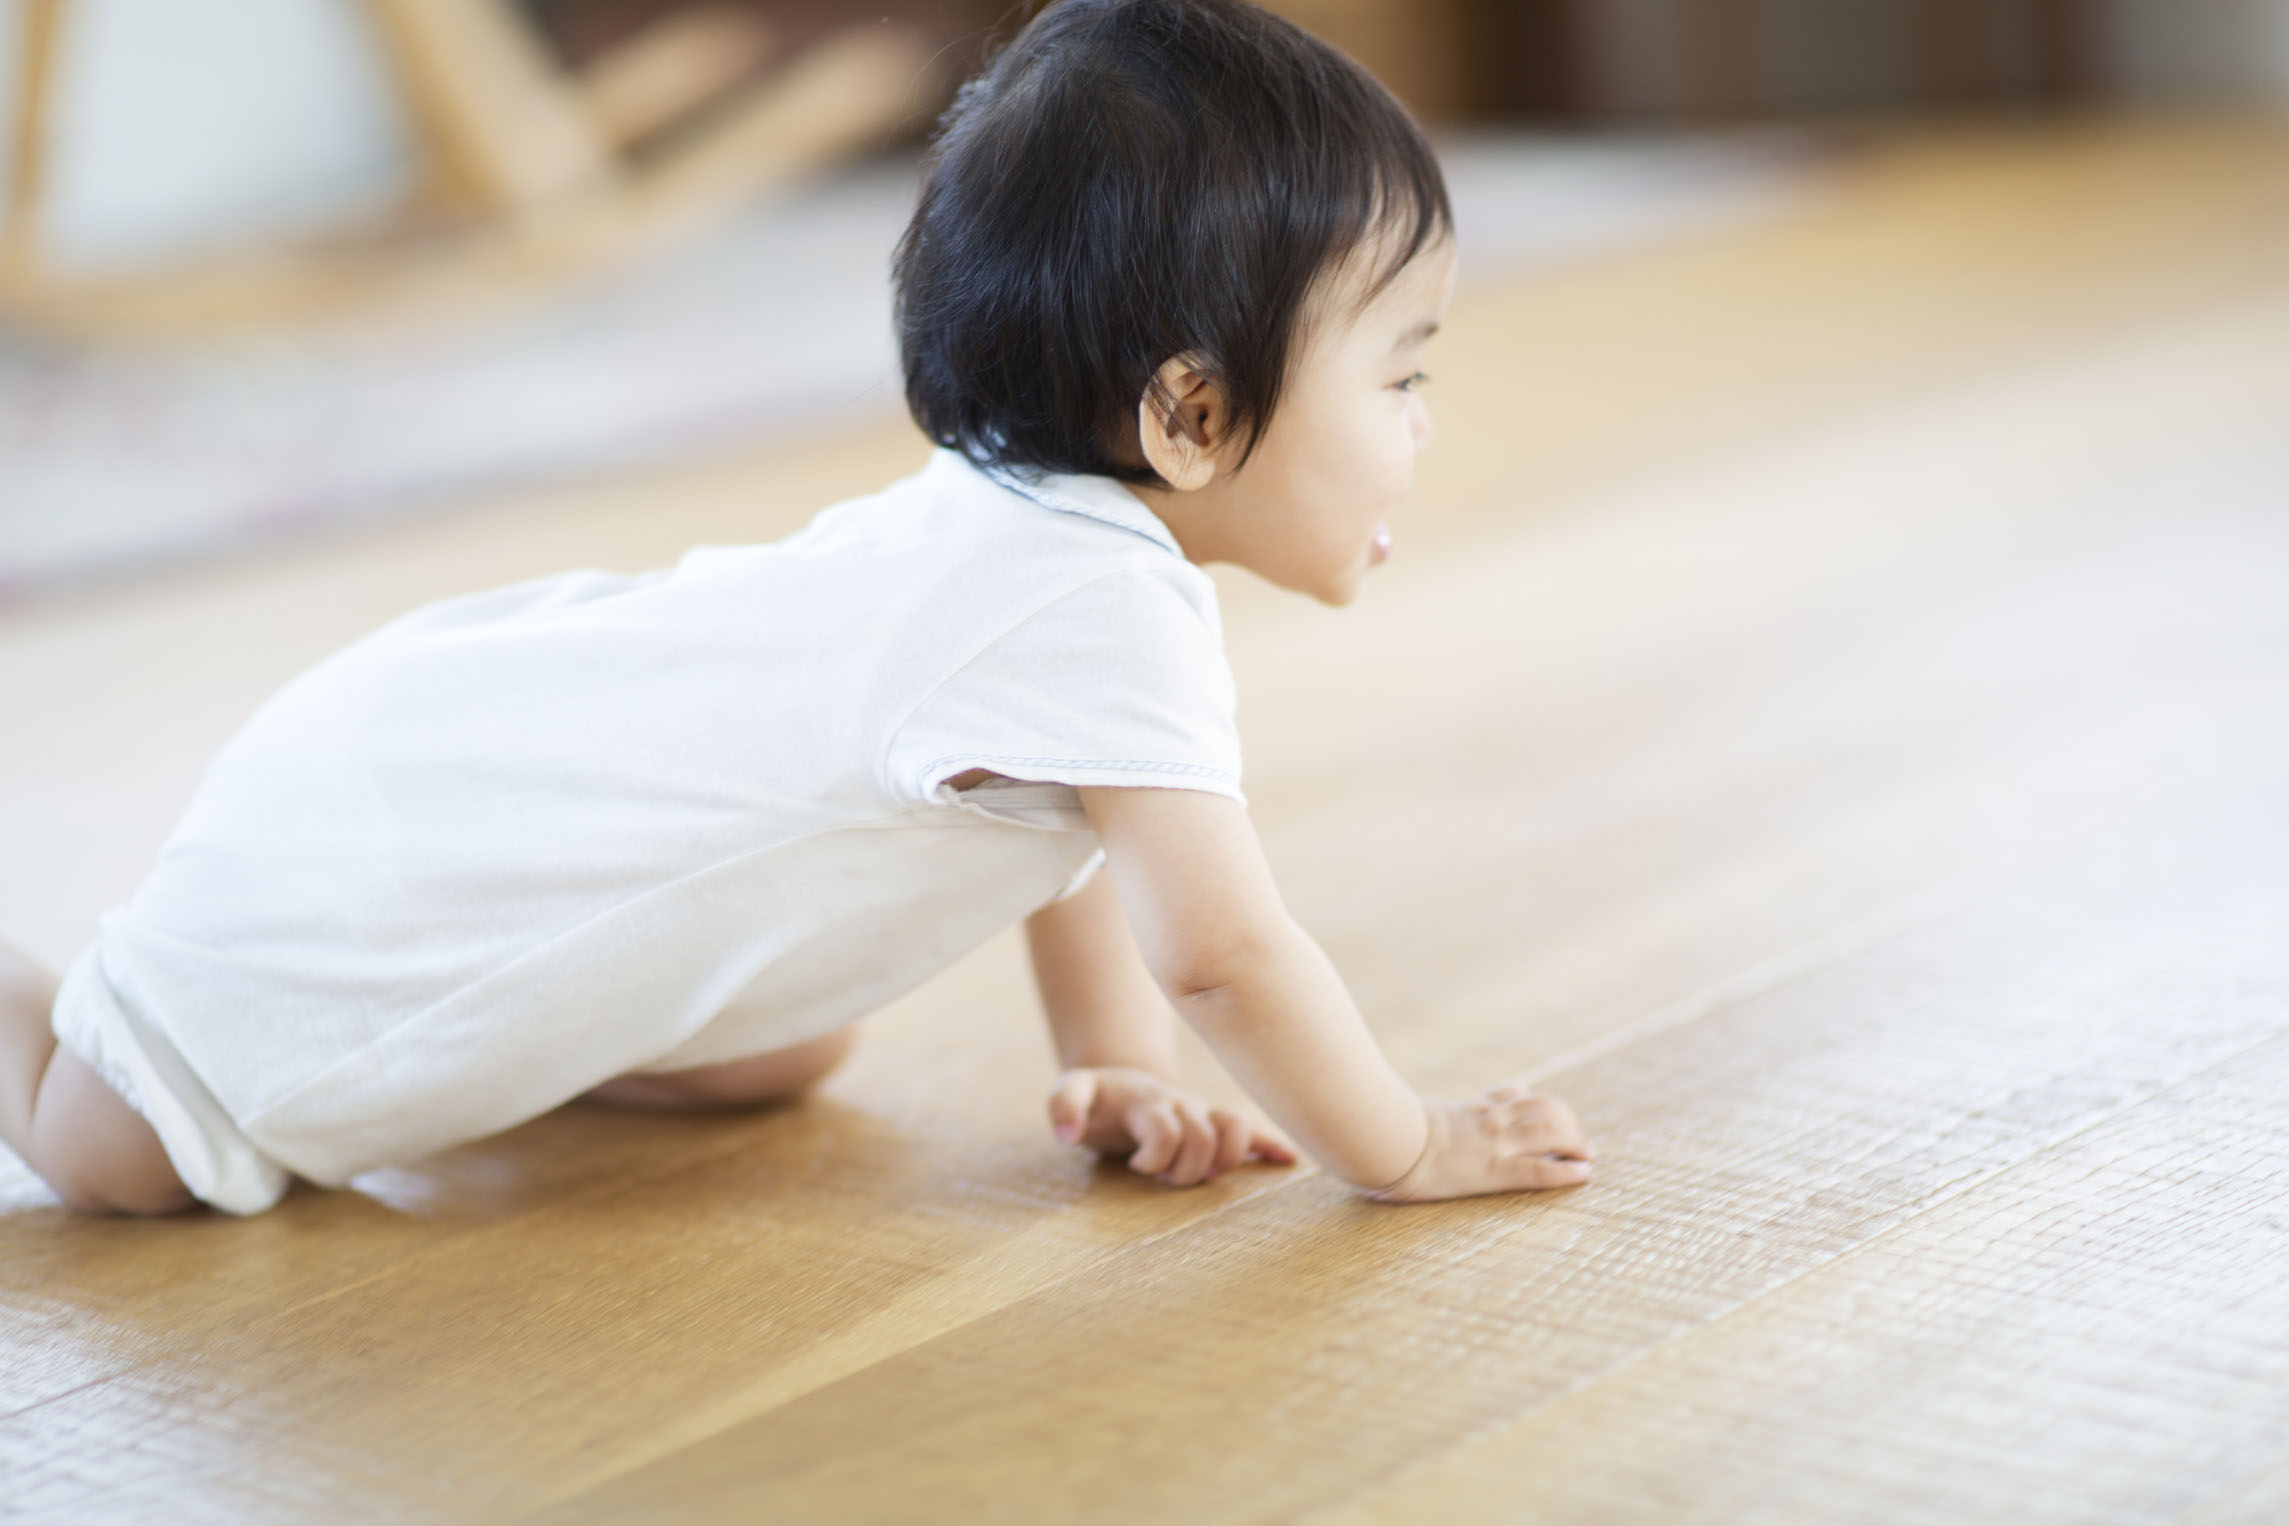 爬行不仅能促进宝宝对食物的消化吸收,还能够锻炼宝宝全身大肌肉活动